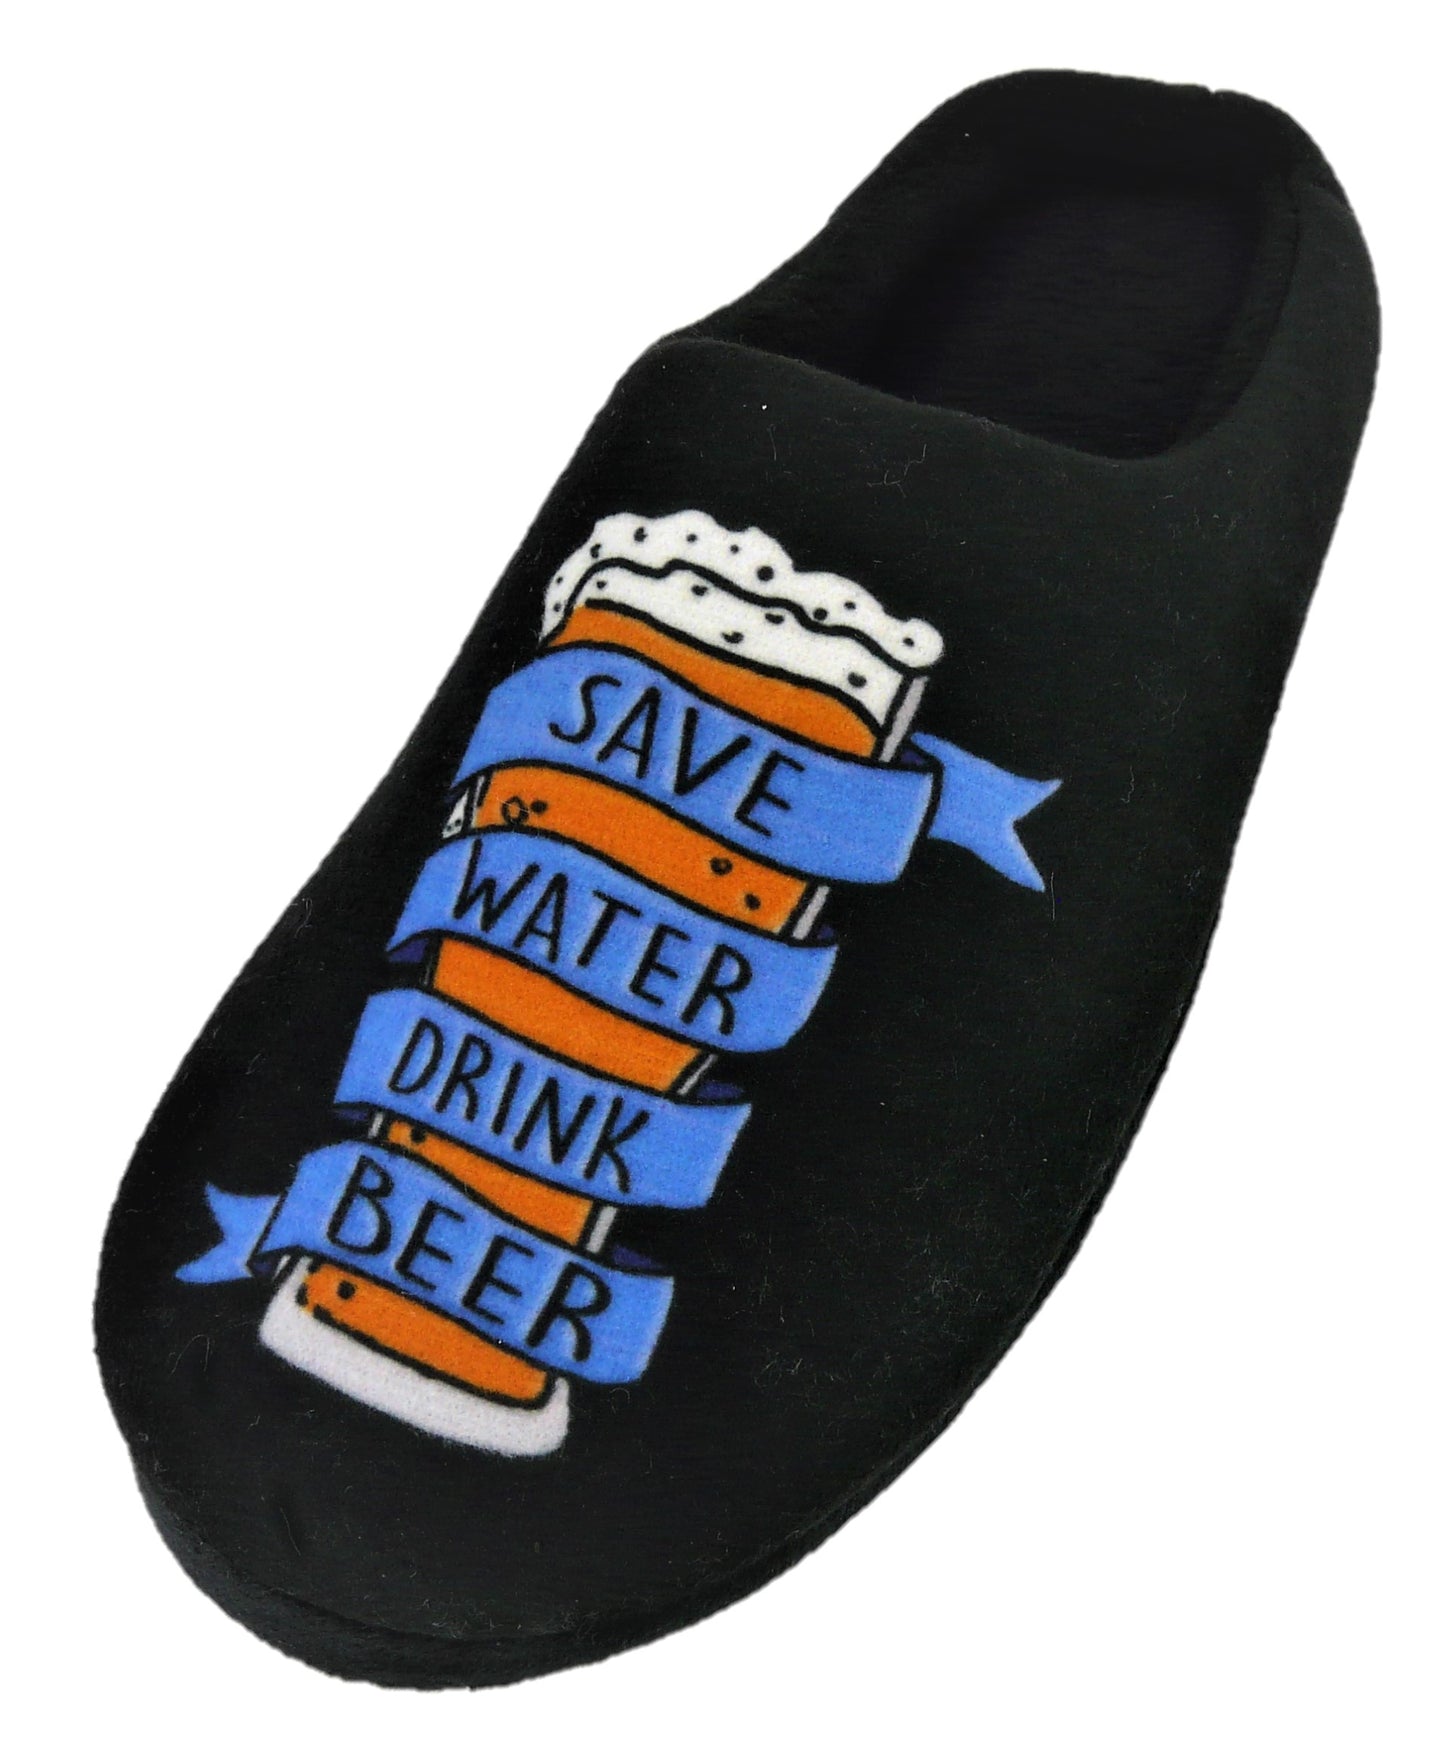 Men’s Novelty Mule Slippers “Save Water Drink Beer”